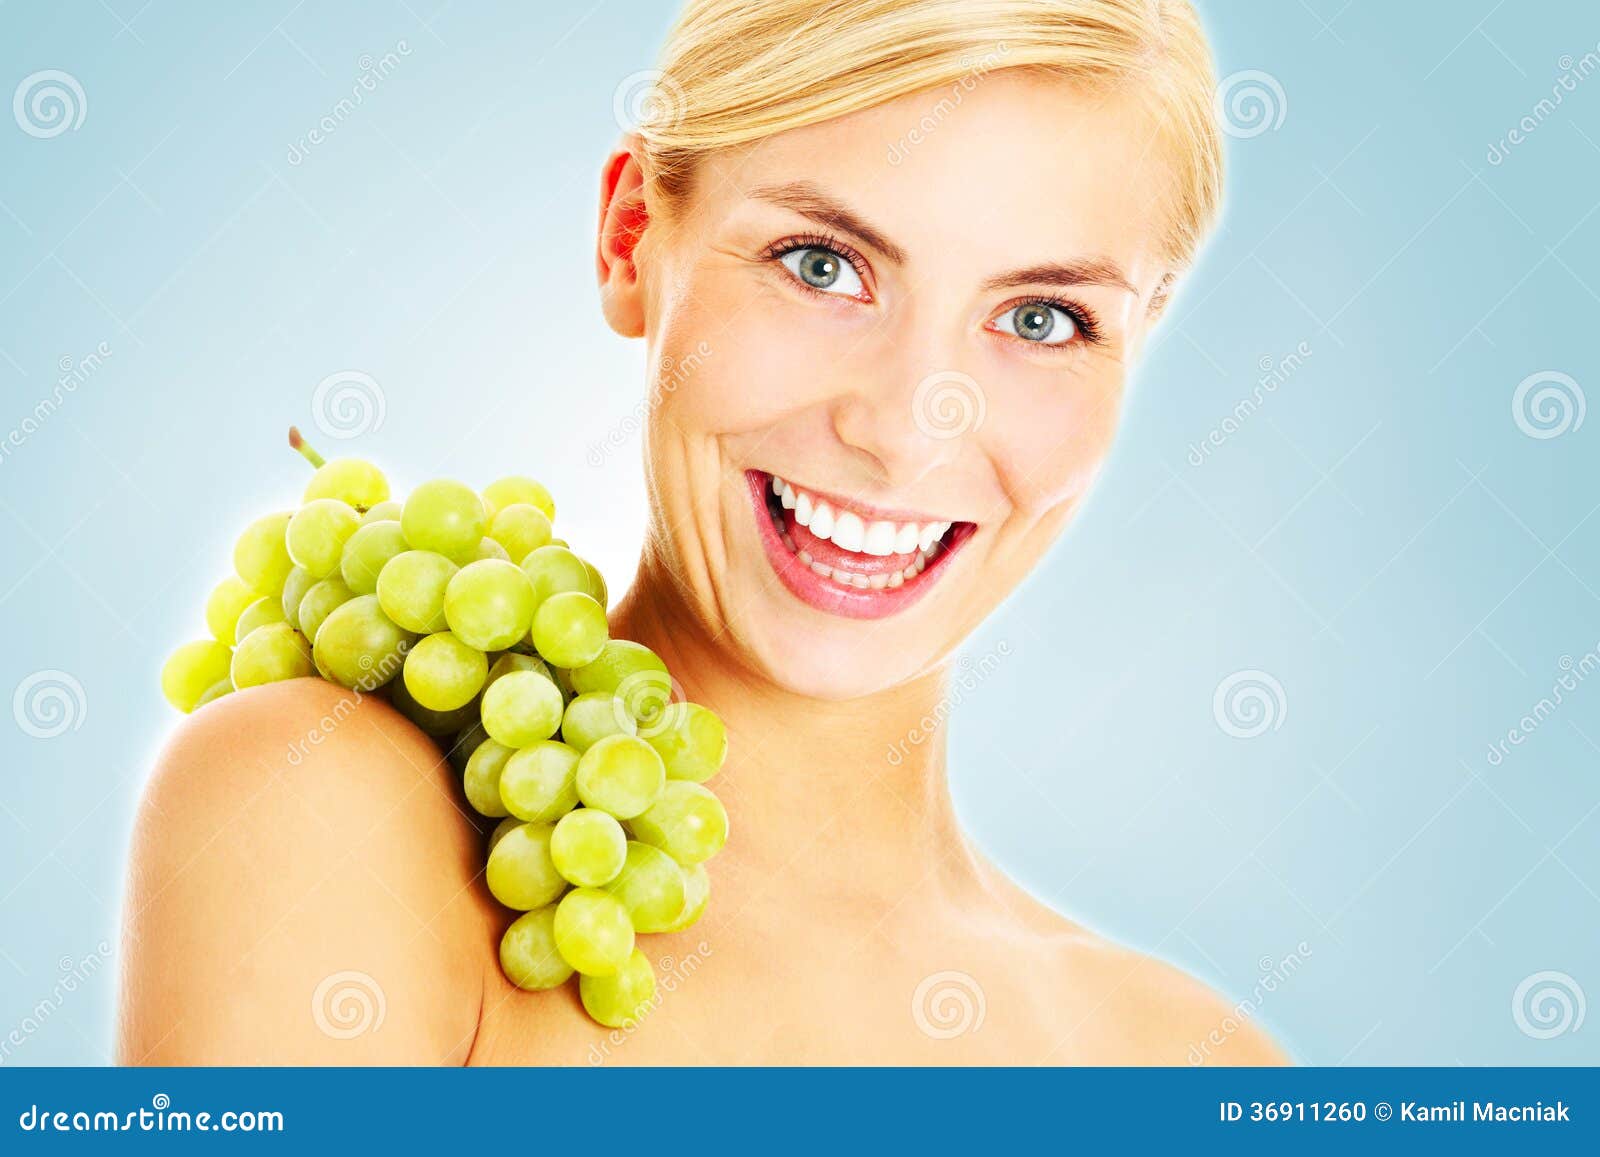 Uva energetica. Un'immagine di bella giovane donna che posa con l'uva sopra fondo blu